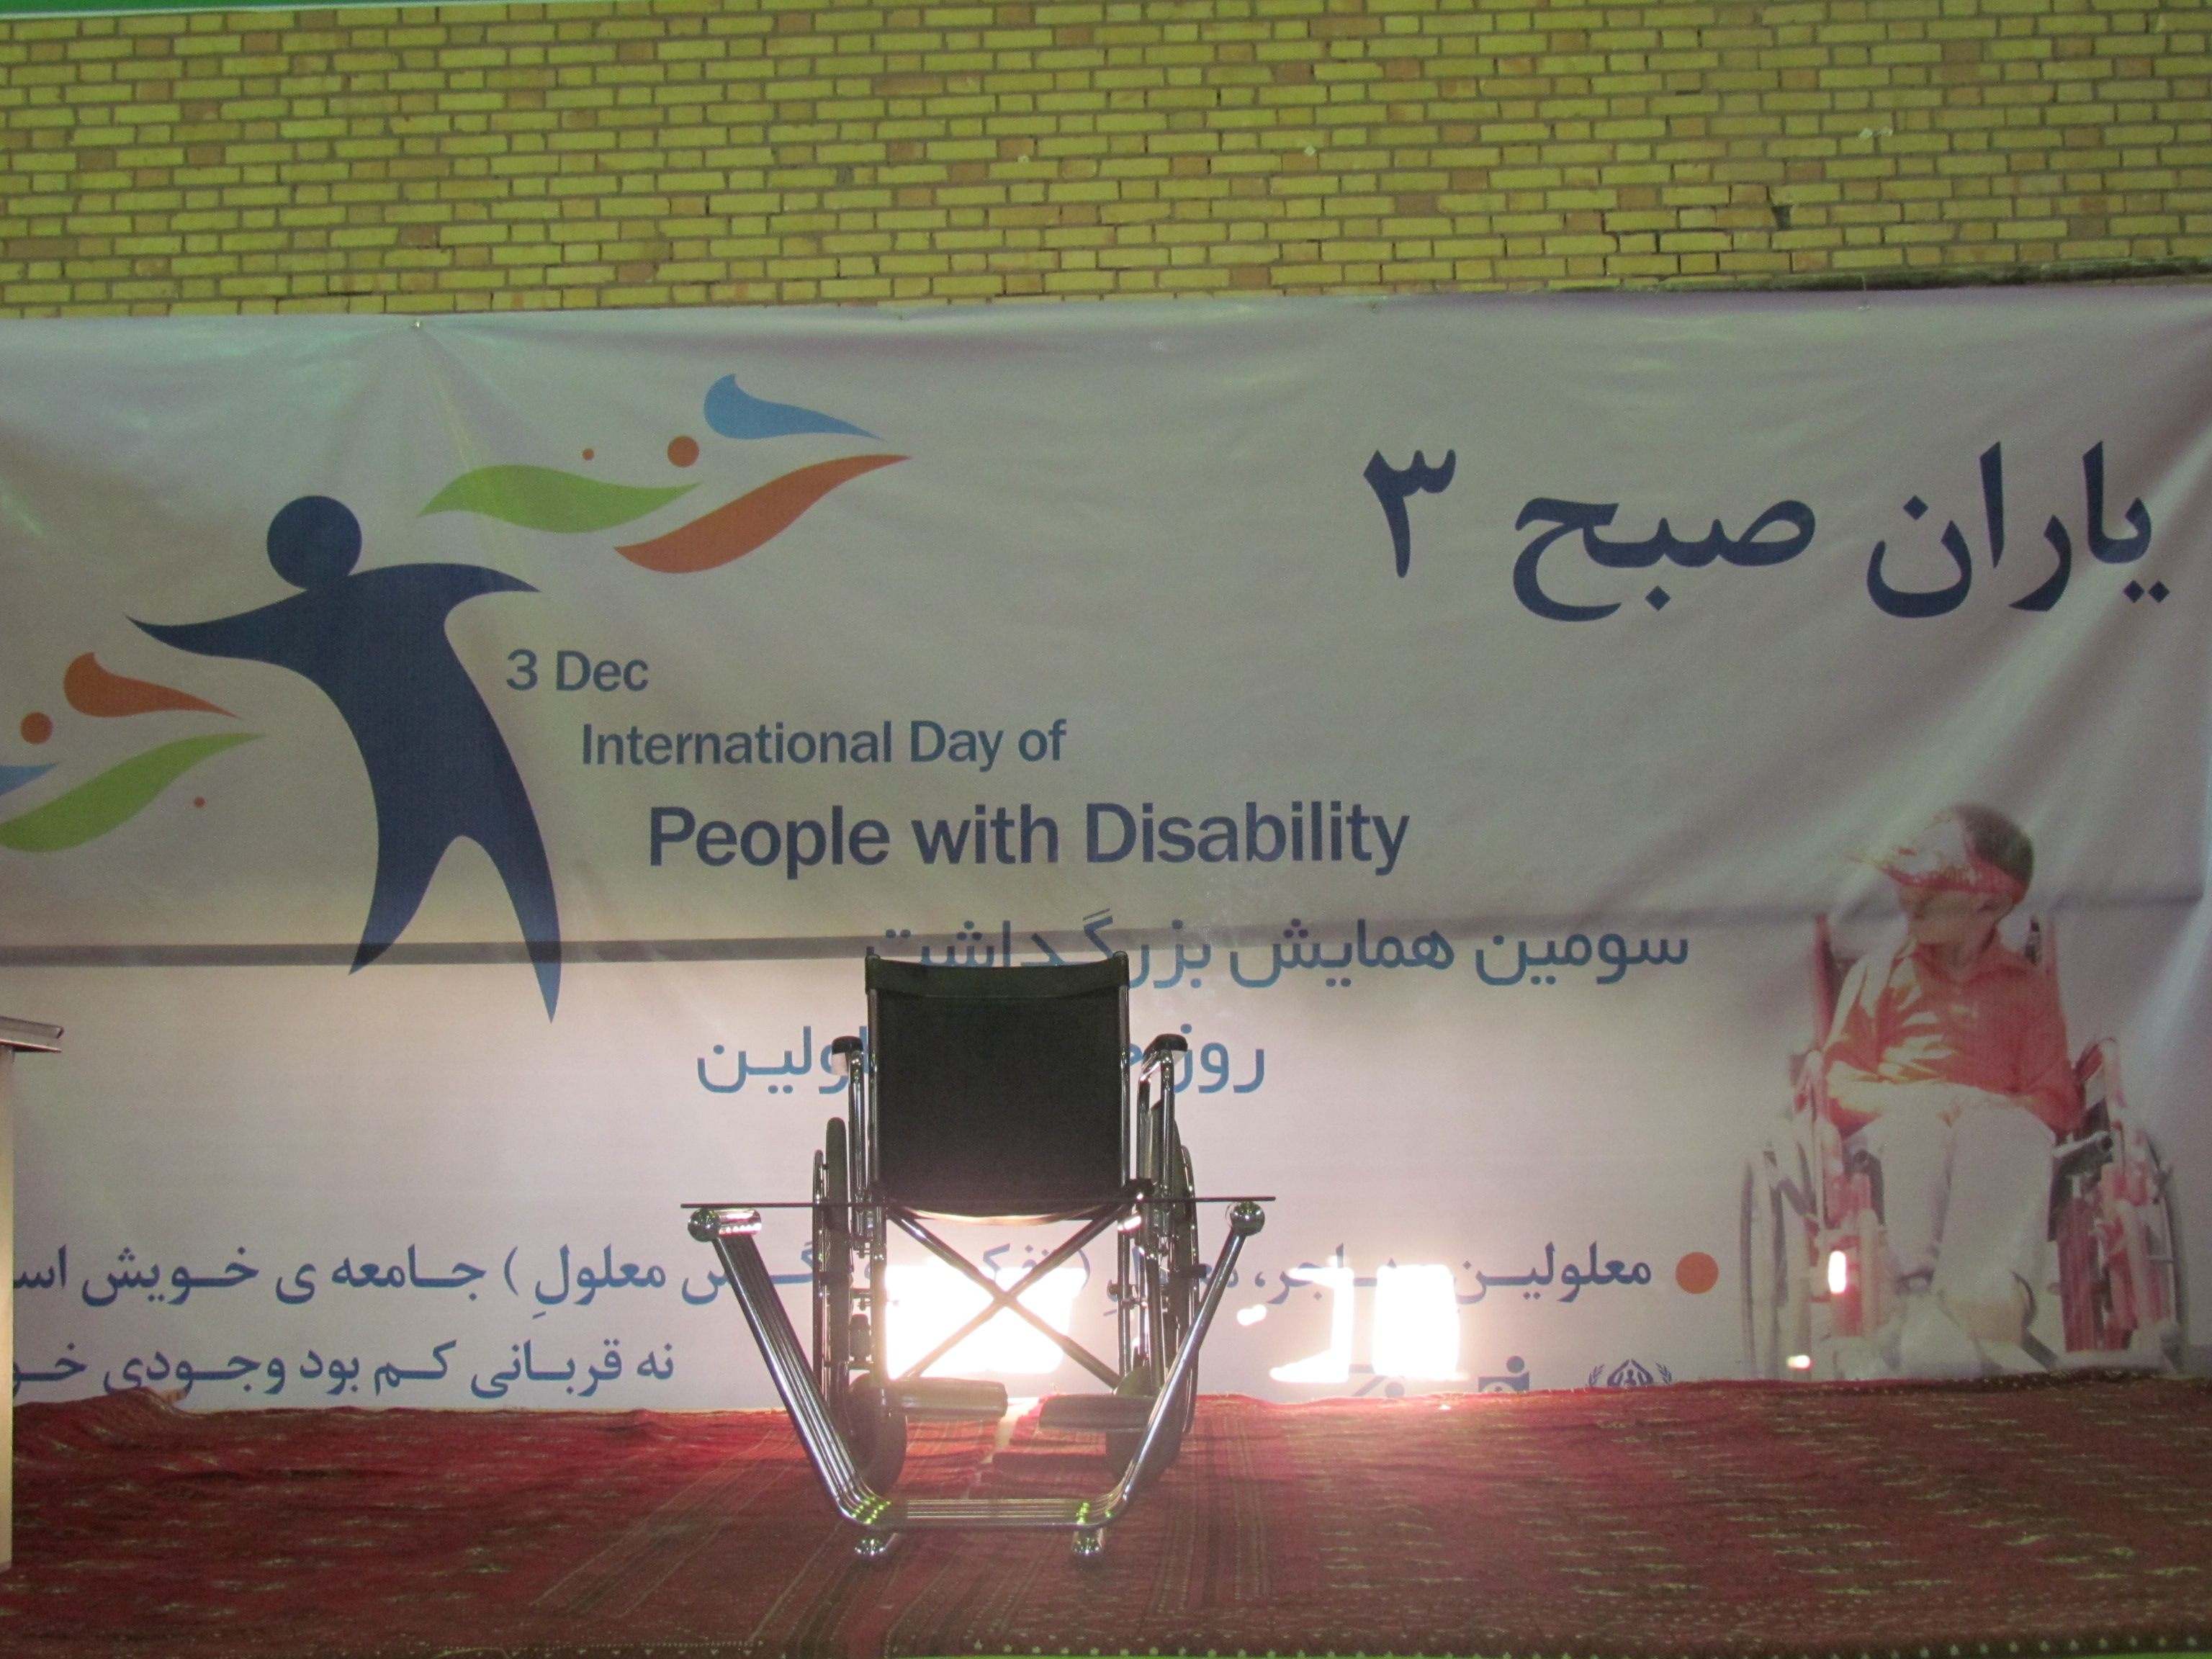 معلولین مهاجر افغانستانی مقیم ایران "کارت معلولیت" دریافت می کنند